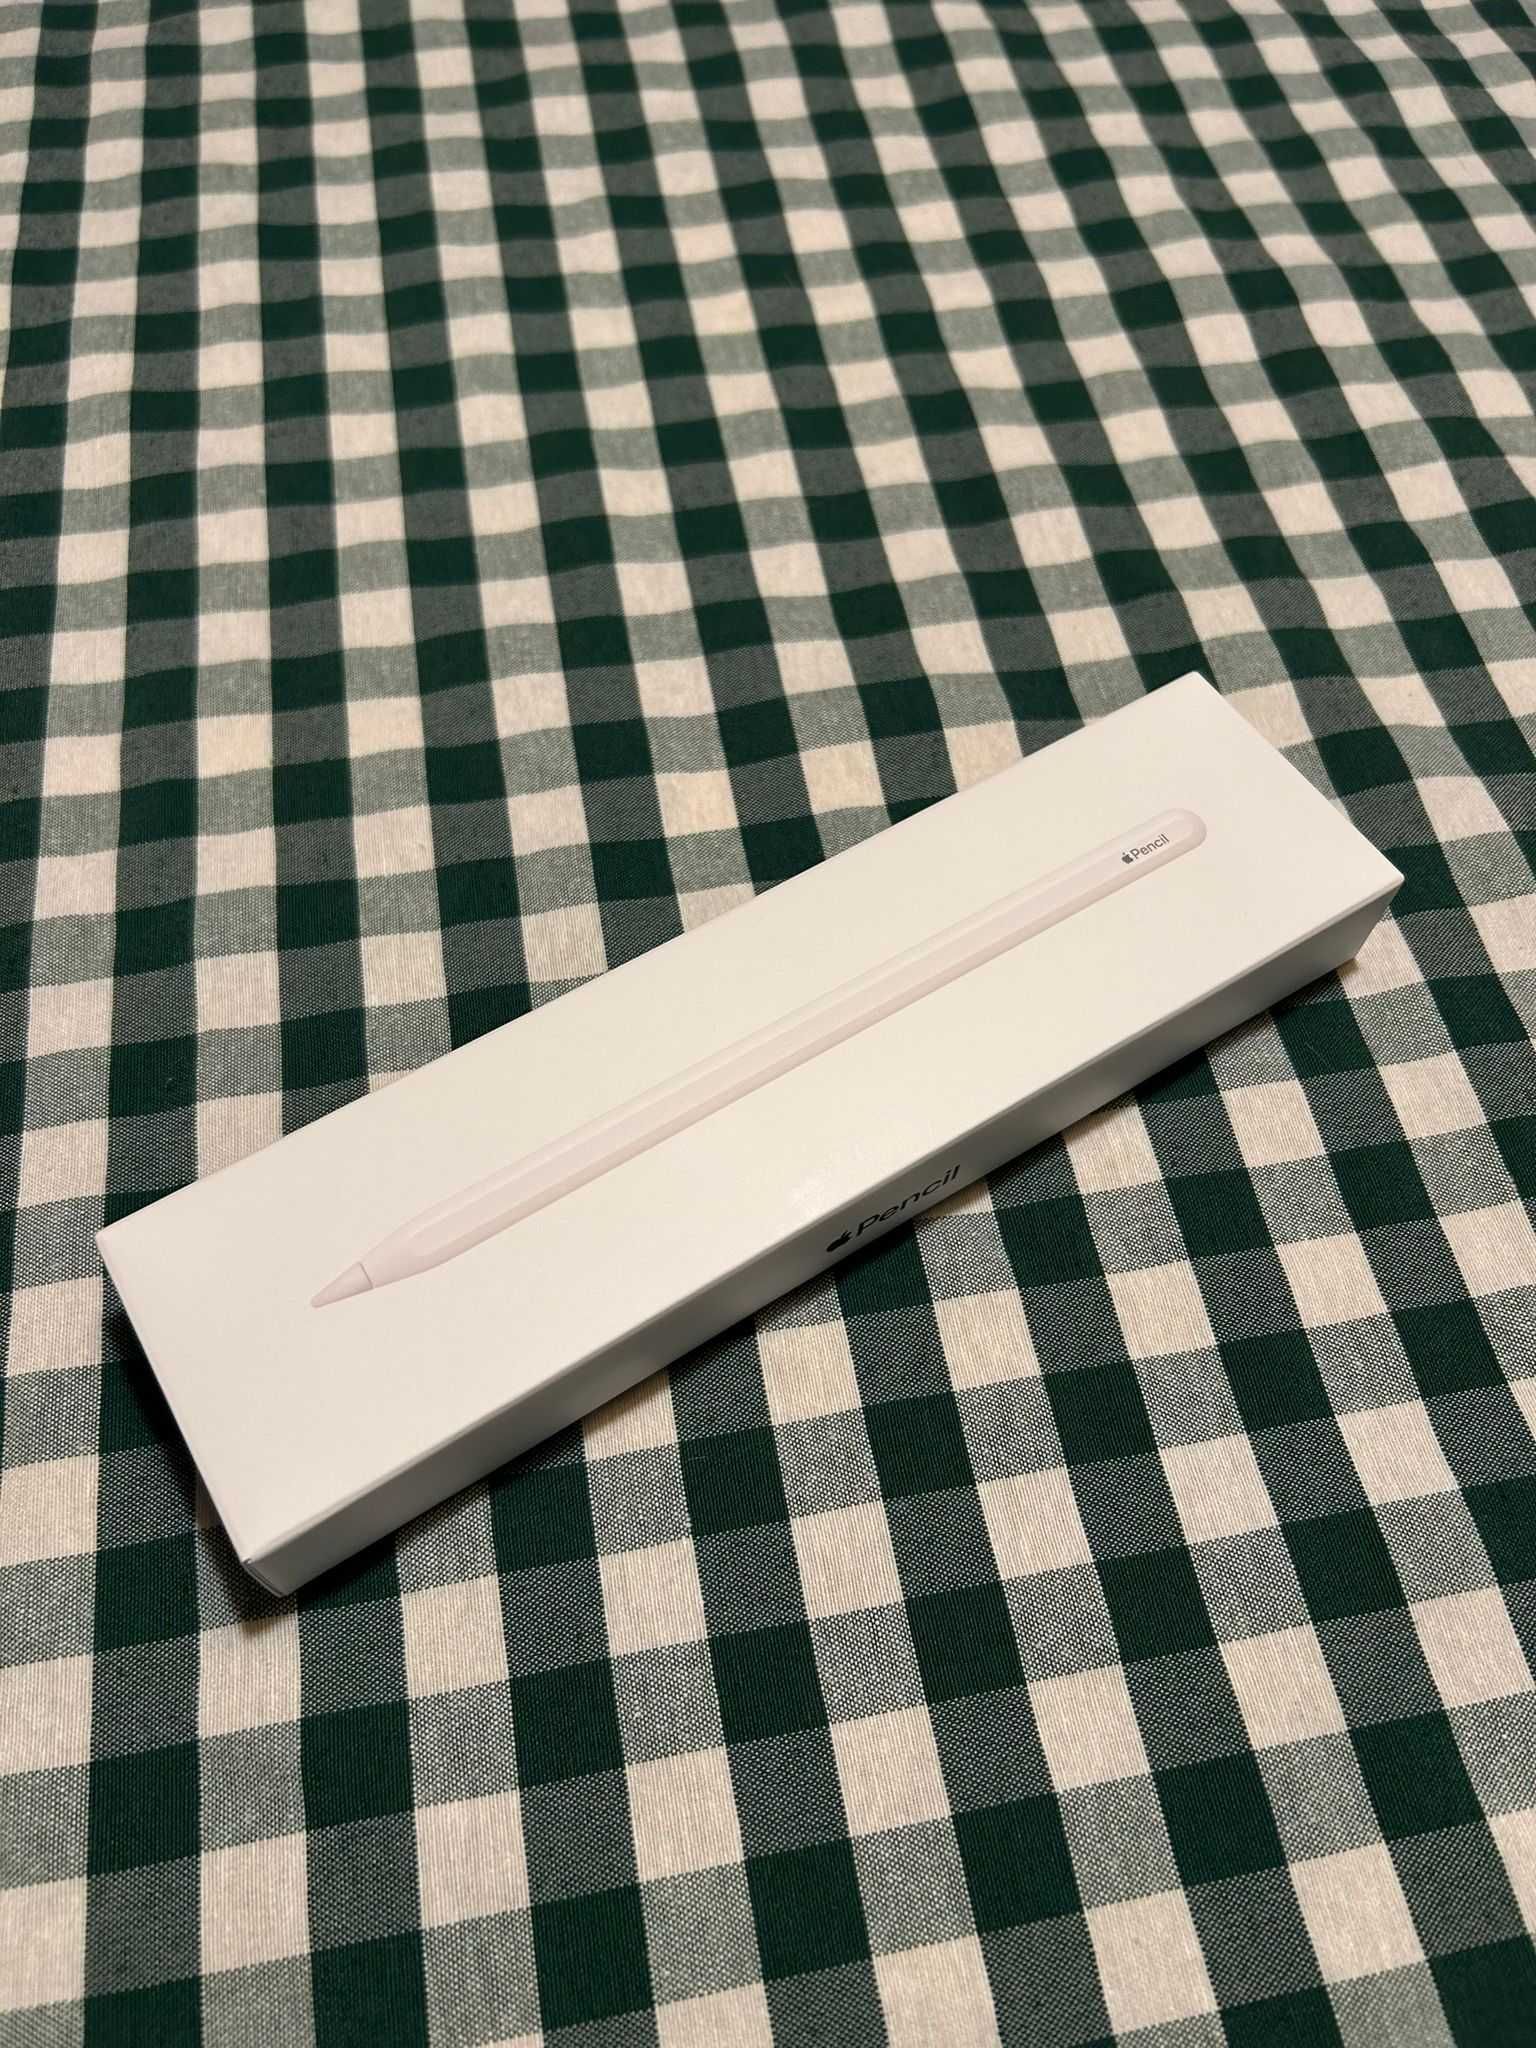 Apple Pencil (2.ª geração) - Novo - Com garantia